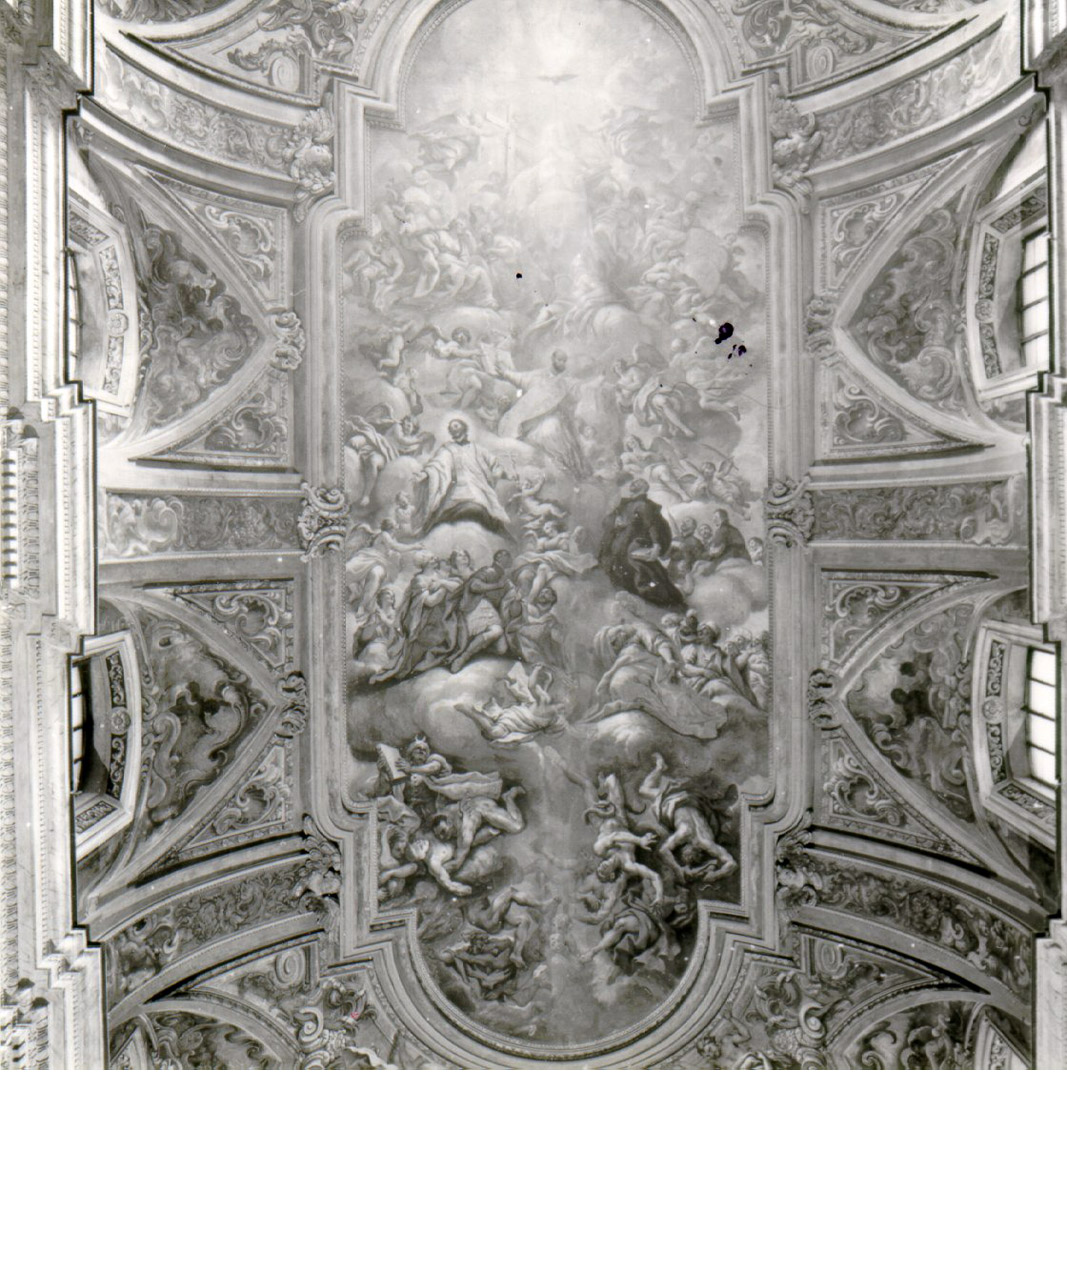 motivi decorativi vegetali con profili di putti alati (dipinto, serie) di Greco Gennaro detto Mascacotta (sec. XVII)